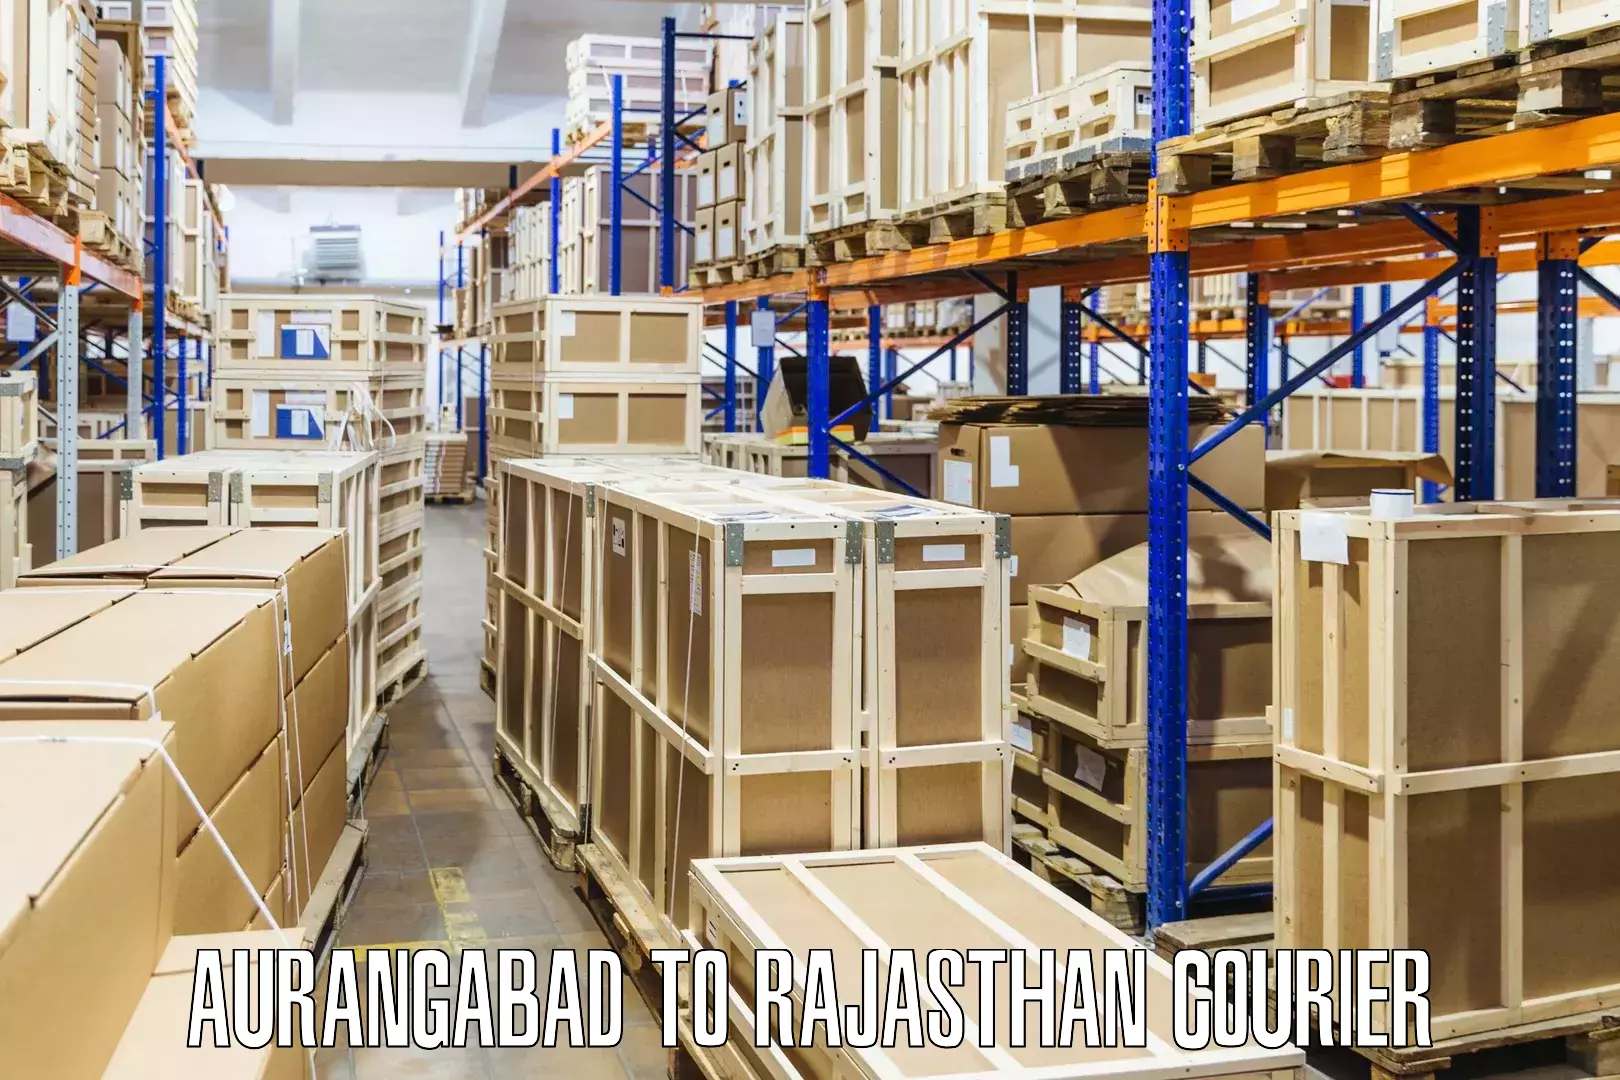 Package tracking Aurangabad to Pratapgarh Rajasthan